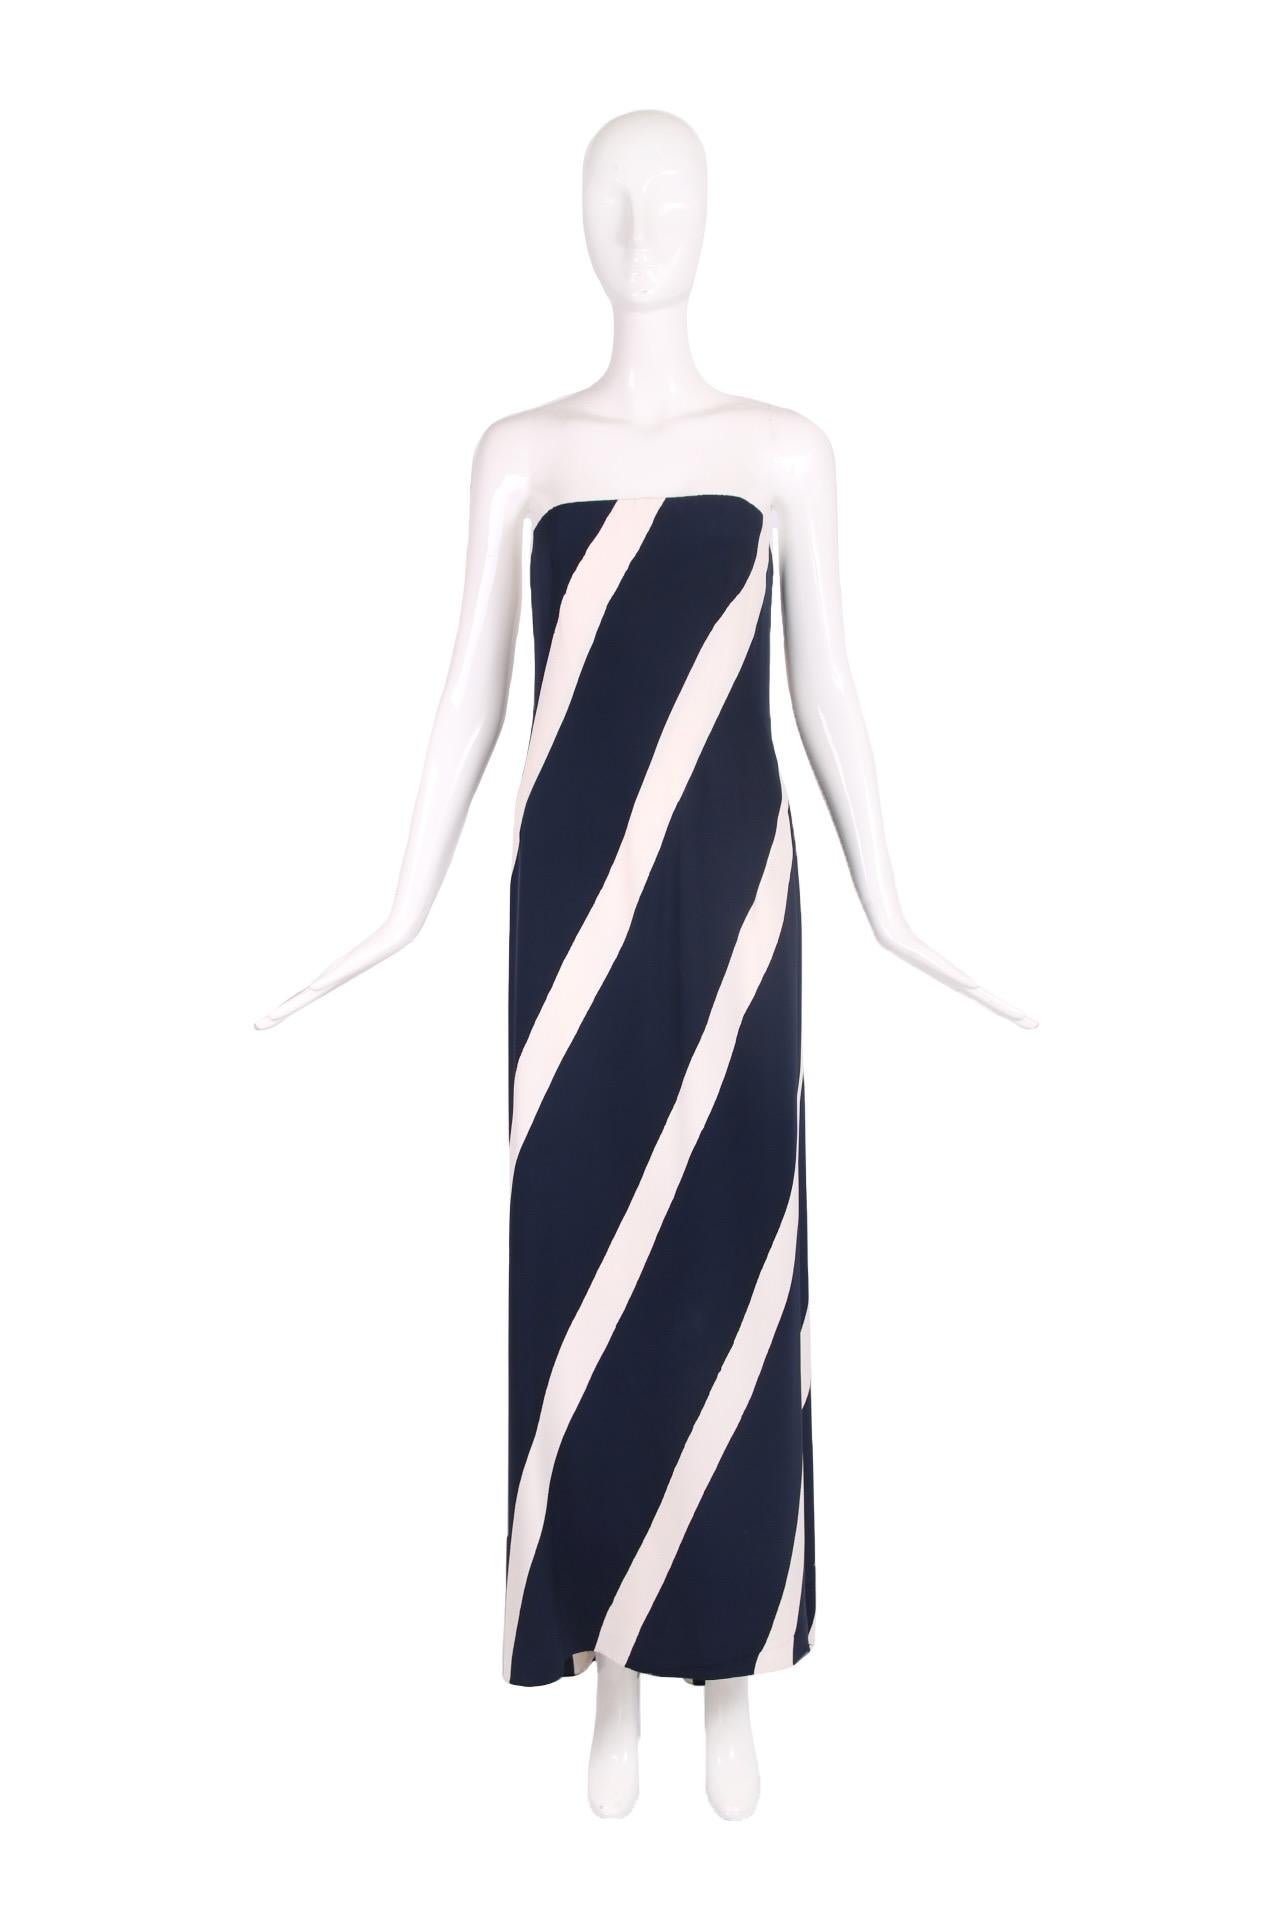 1992 S/S Yves Saint Laurent haute couture no.67074 robe du soir en soie à bretelles avec des rayures verticales/diagonales marine et blanche et une mini-traîne à l'ourlet du dos. Bien que d'apparence faussement simple, l'intérieur et la construction